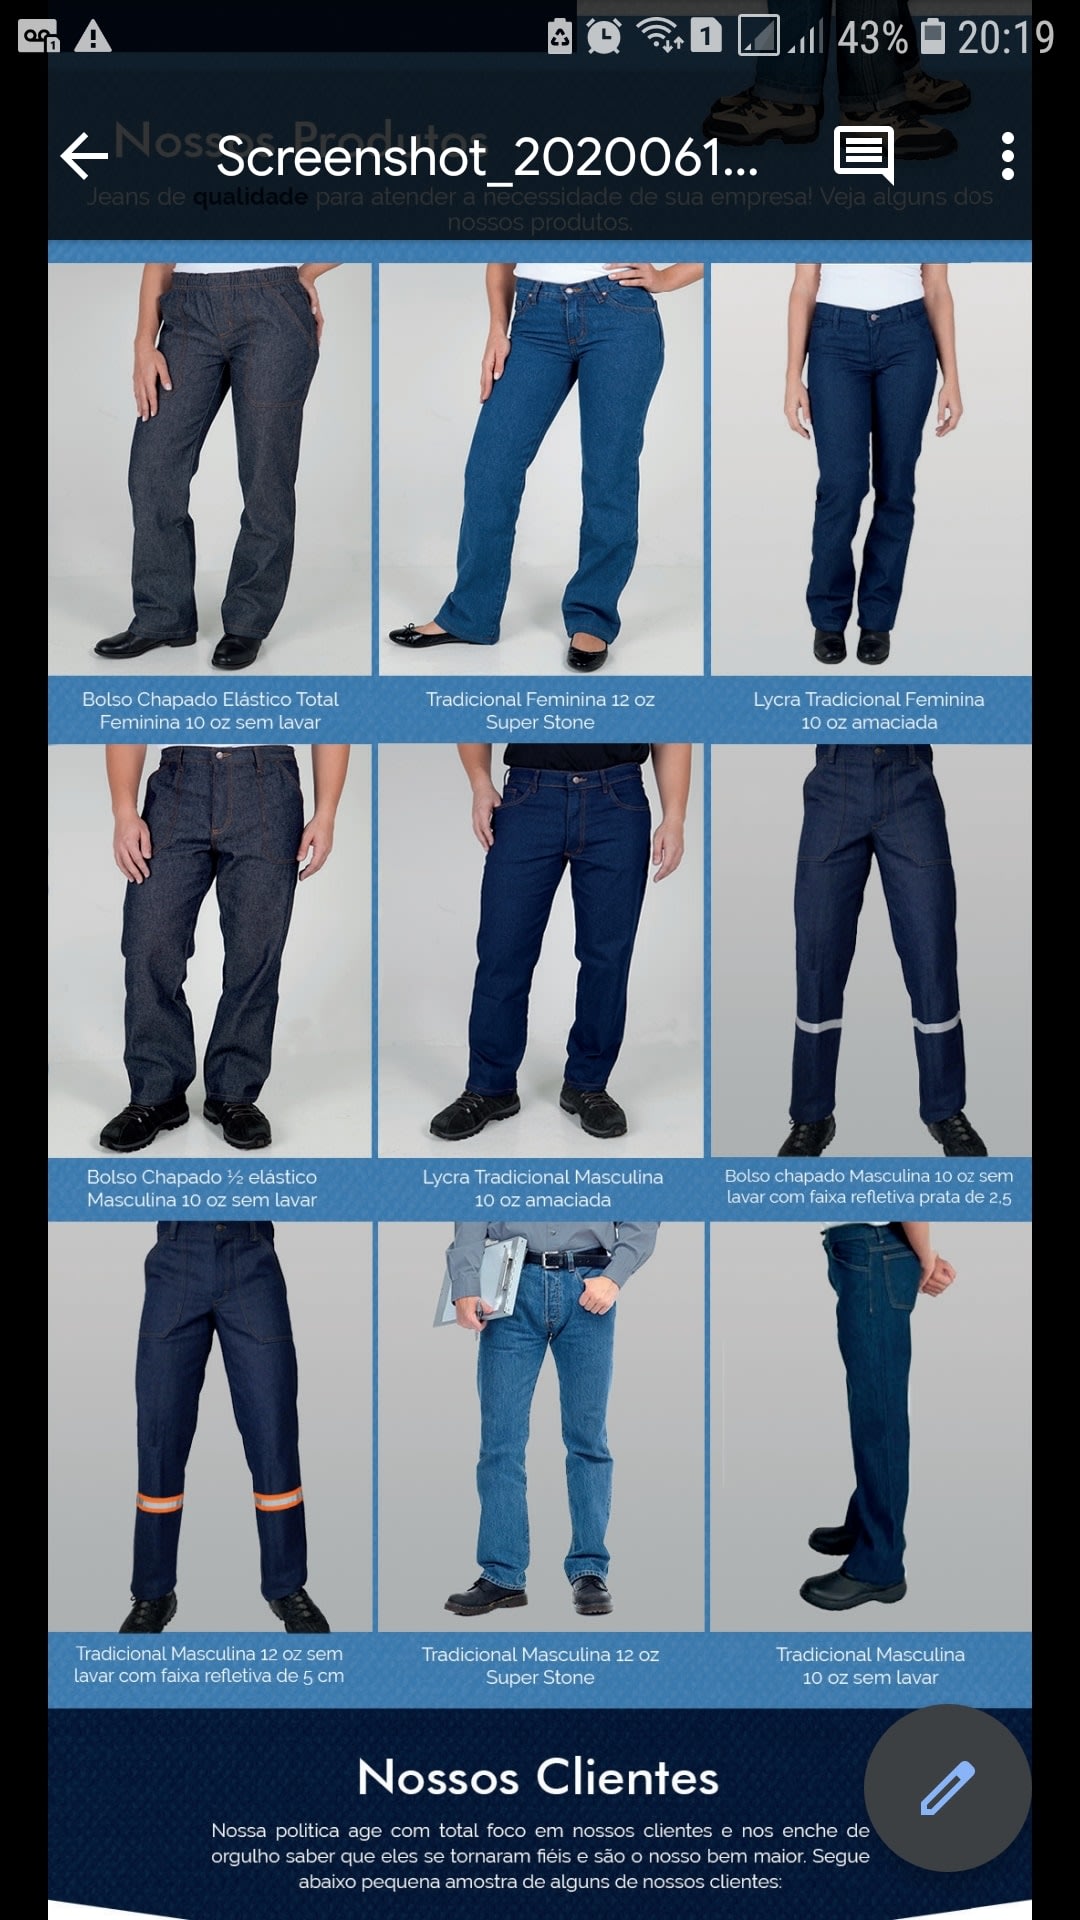 Calça jeans de trabalho masculina para uniformes e fardamentos modelos com  ou sem elastano – Kit 10 pçs – Uniformes e Fardamentos Profissionais.  UniAlpha Uniformes.